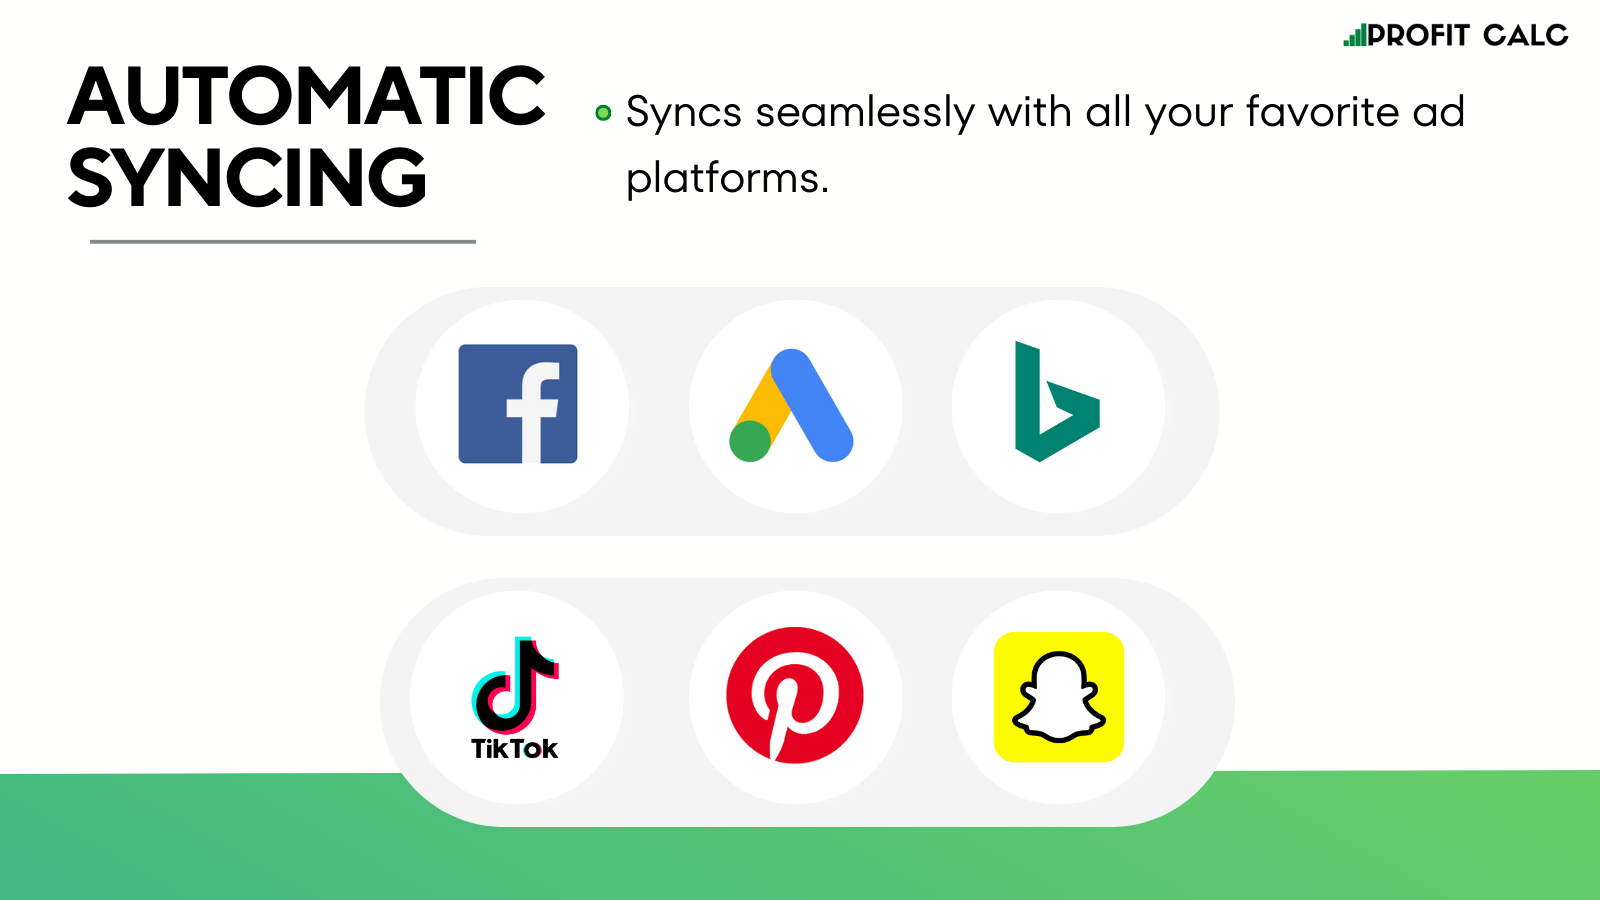 Facebook, Google, Bing, Tik Tok, Snapchat, & Pinterest Syncing